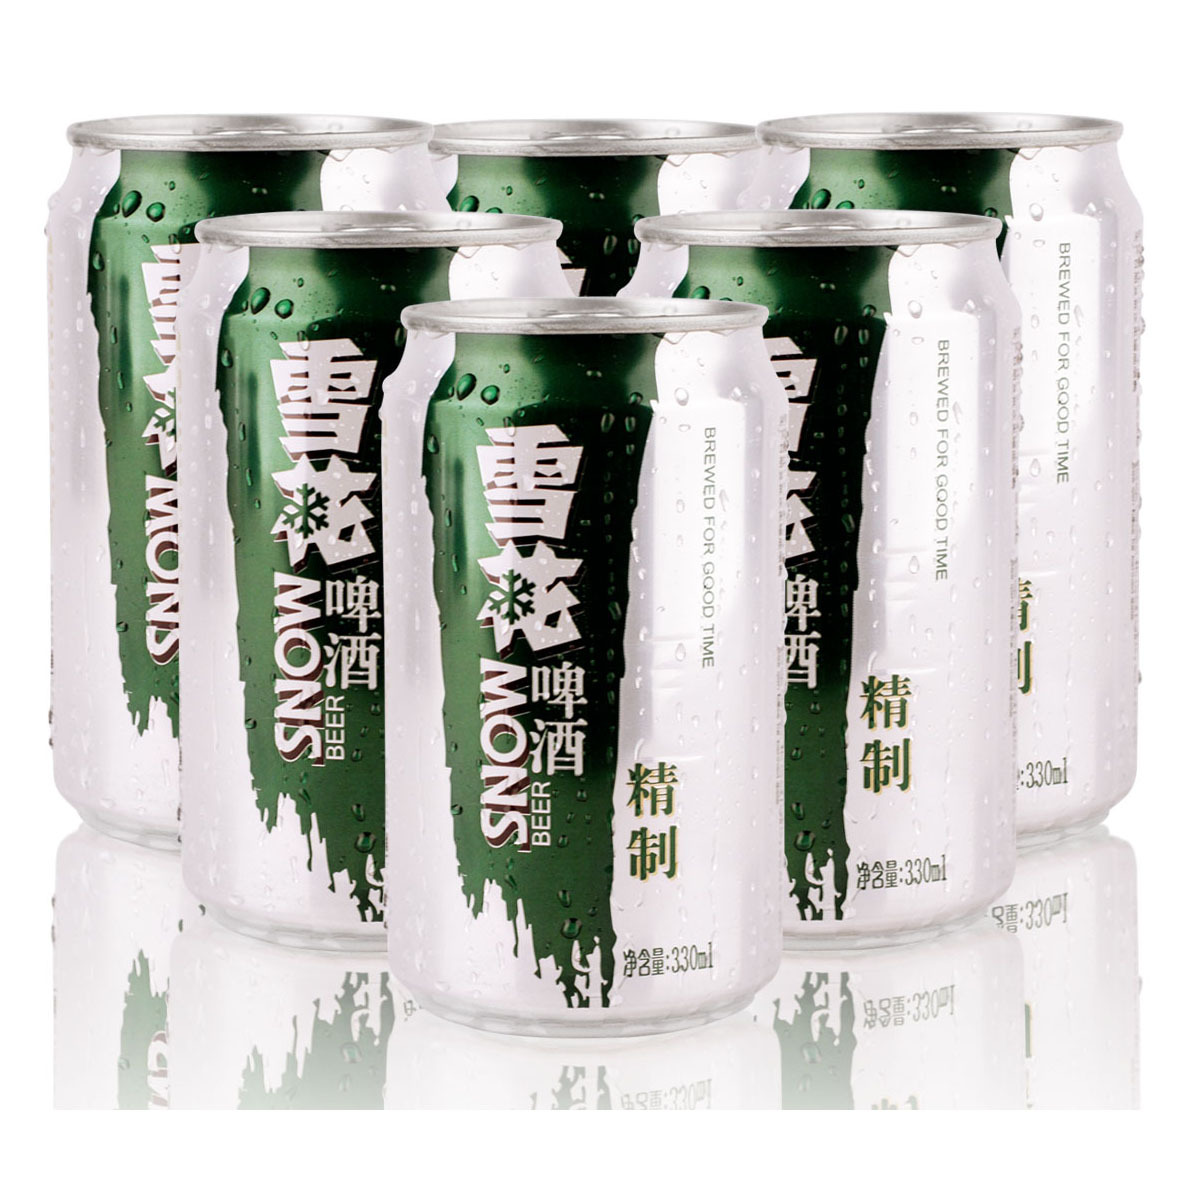 雪花啤酒是国产(雪花、哈啤、燕京，还有多少品牌是国产的？啤酒为何越来越难喝？)